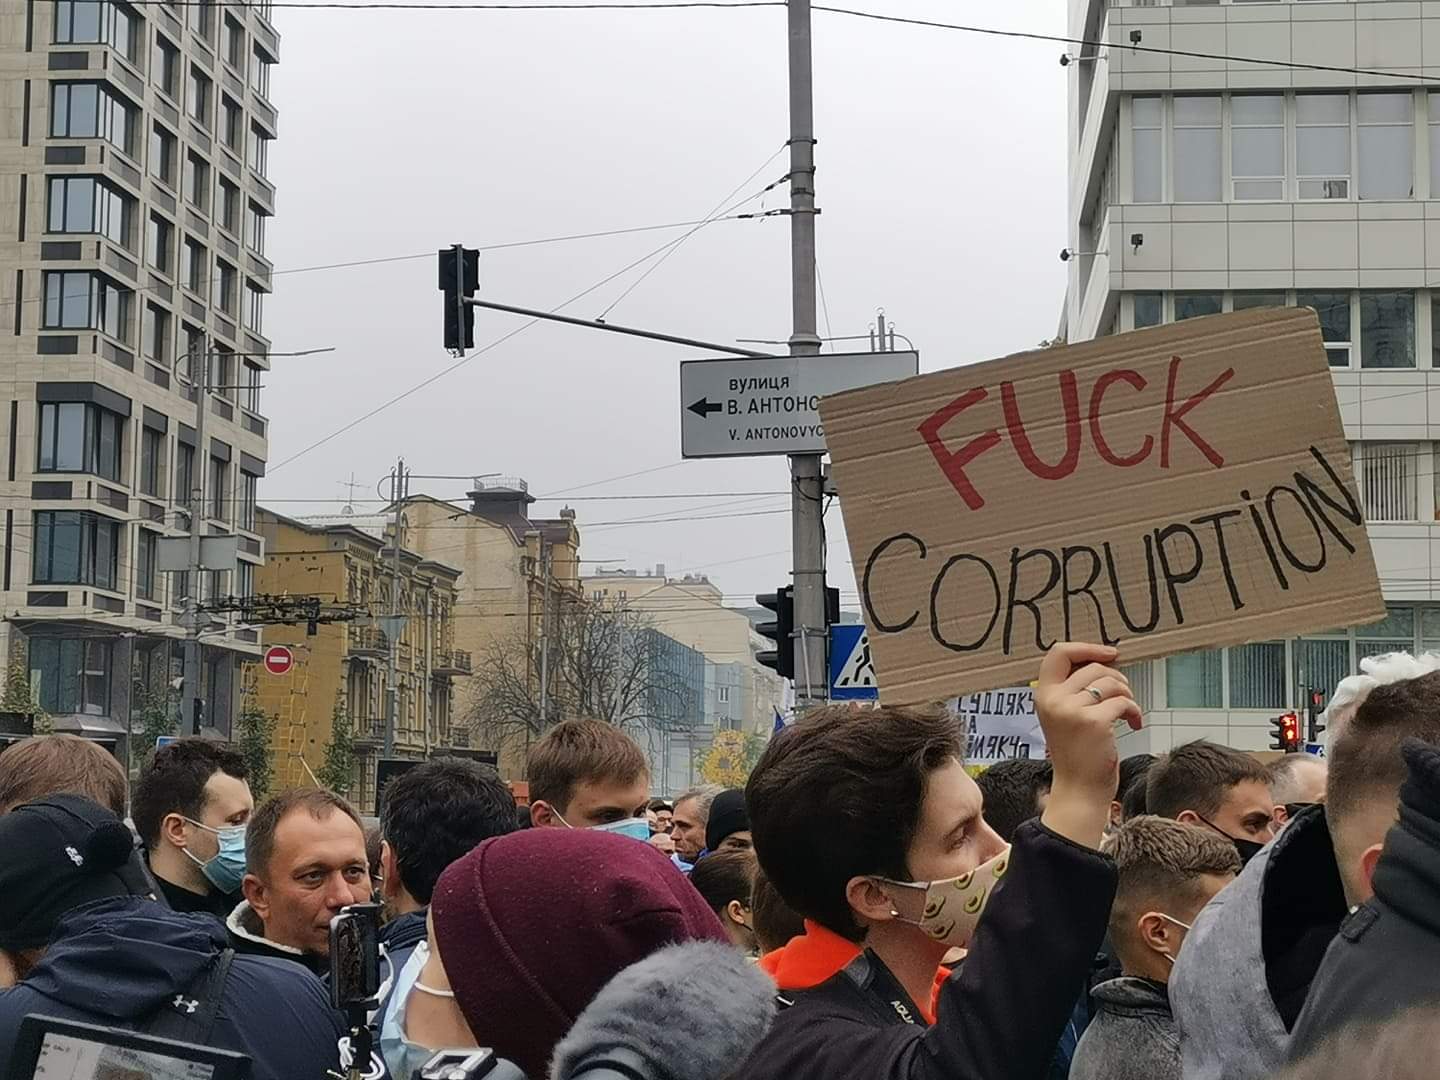 Протести біля КСУ, фото — Громадське радіо